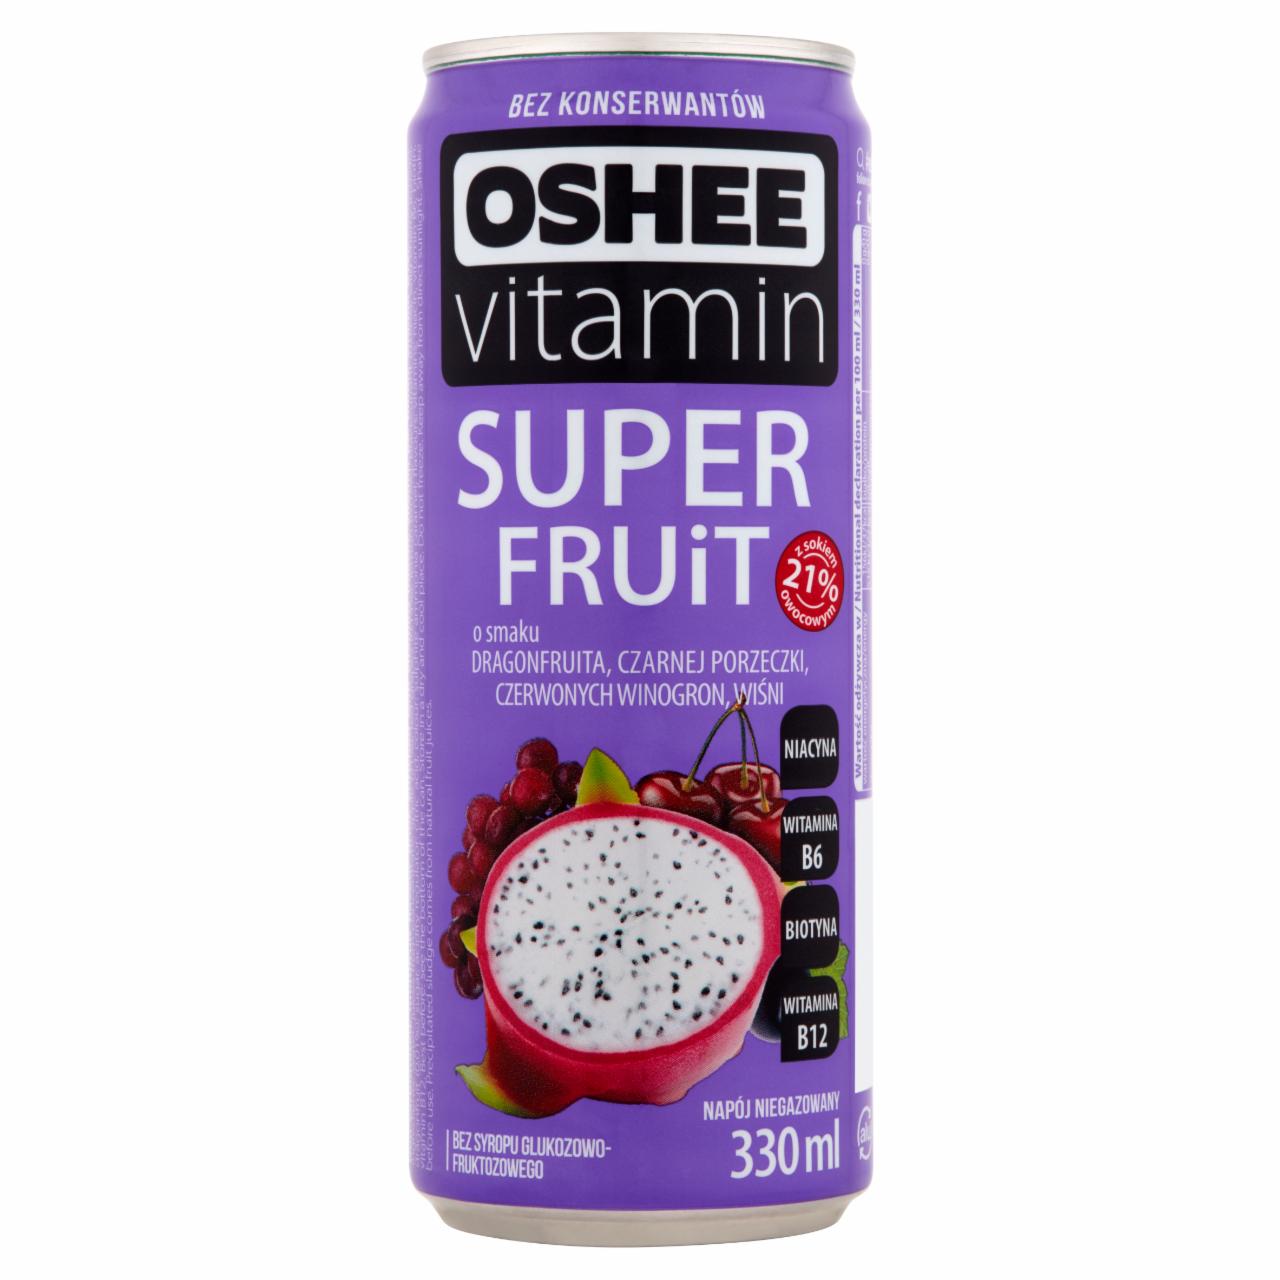 Zdjęcia - Oshee Vitamin Super Fruit Napój niegazowany o smaku wieloowocowym wzbogacony witaminami 330 ml